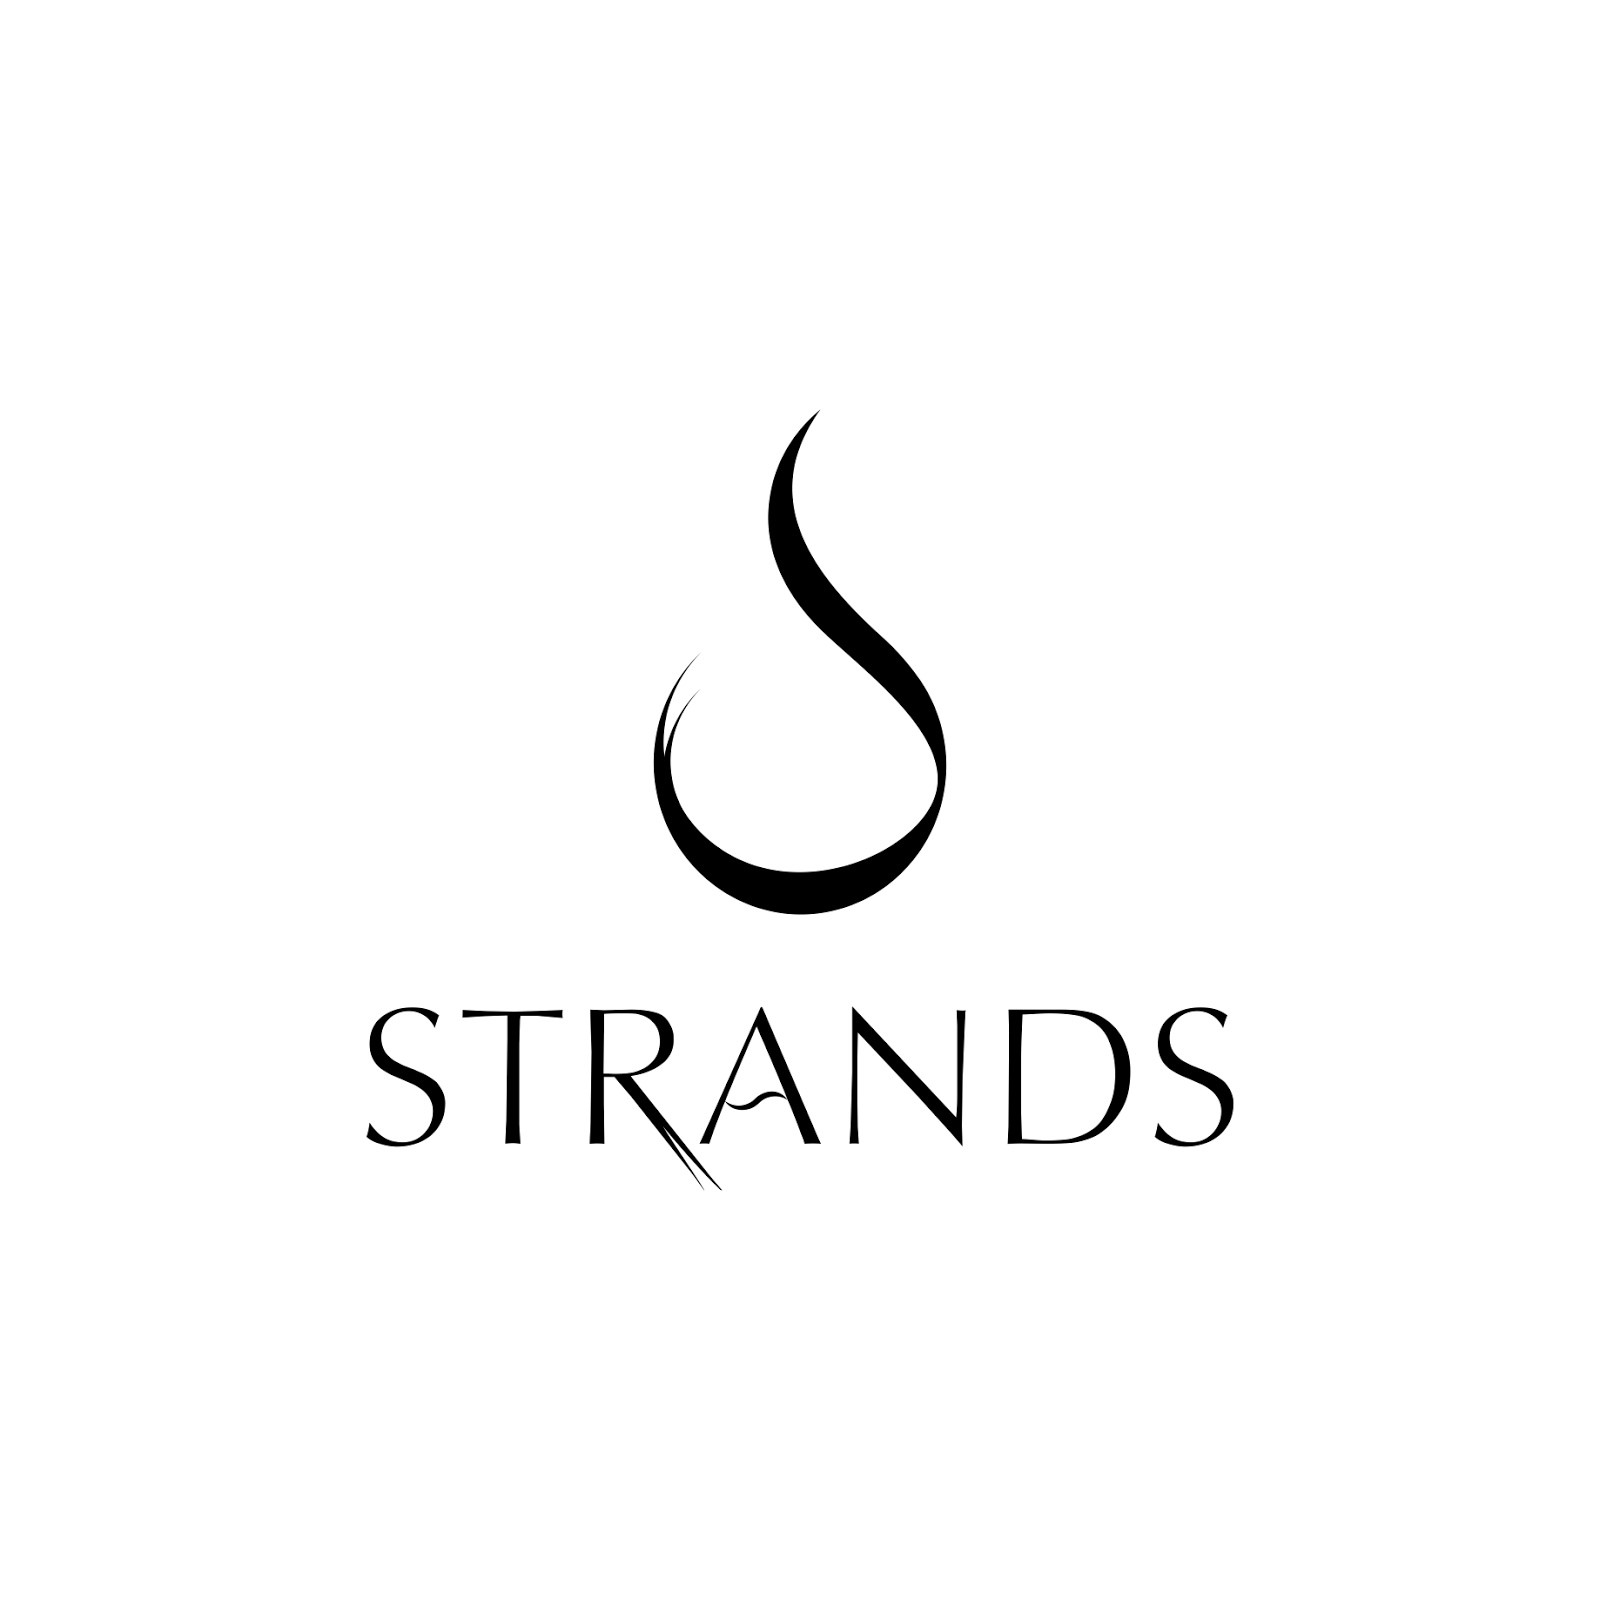 strands logo design get inspiration for your company logo brand